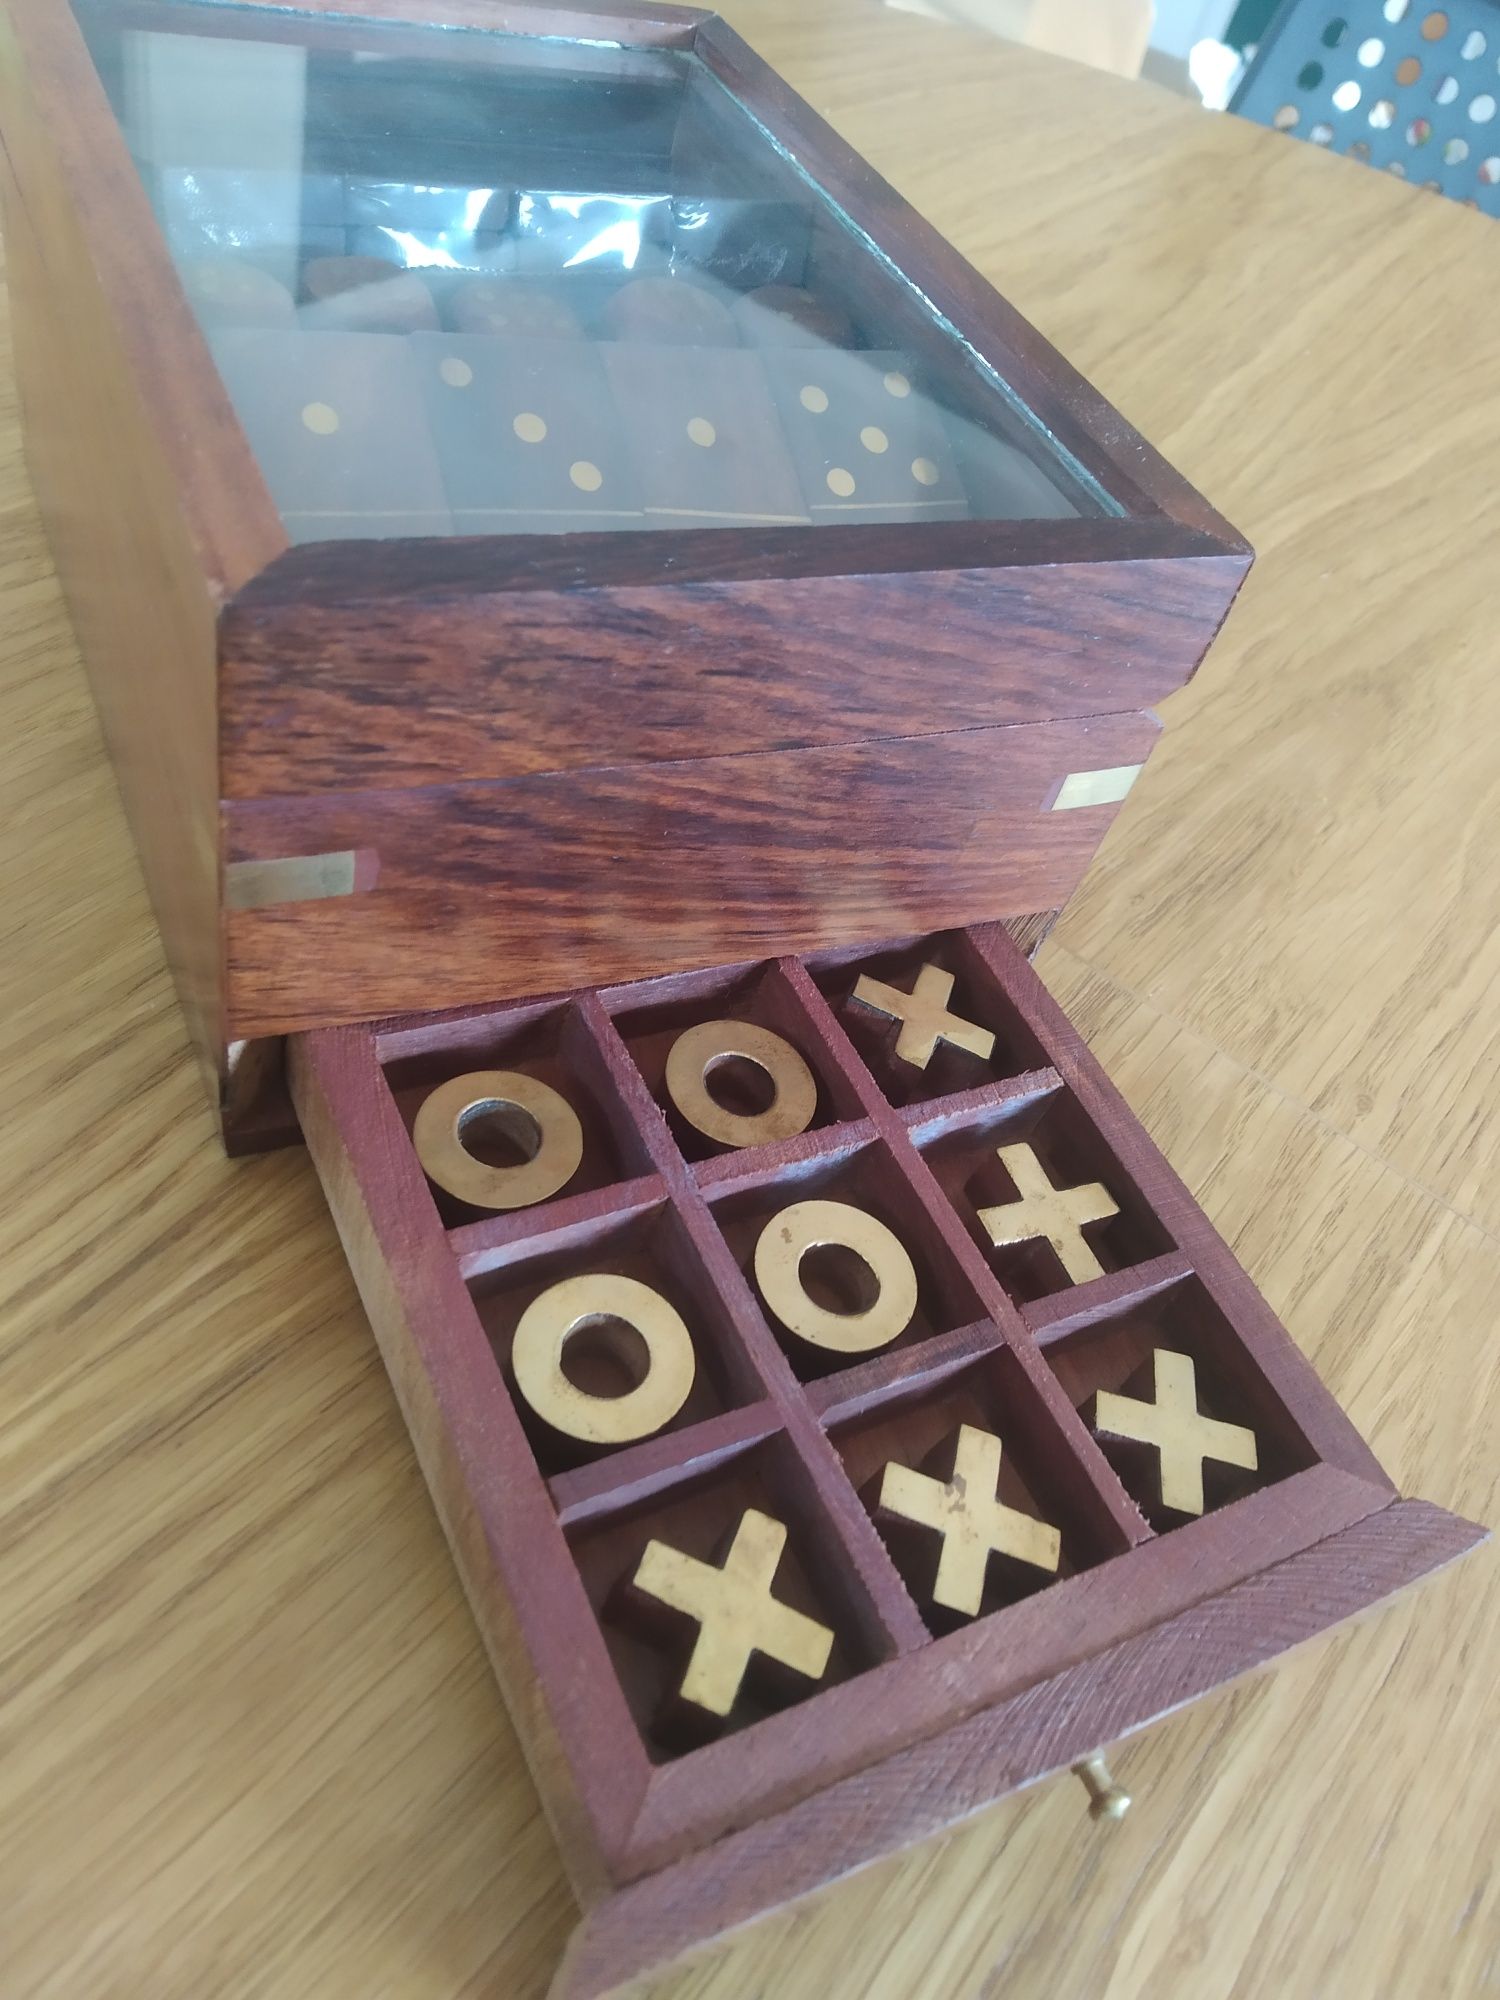 Zestaw gier: kółko i krzyżyk, domino, kości 3W1 ; 15x15x7,5cm